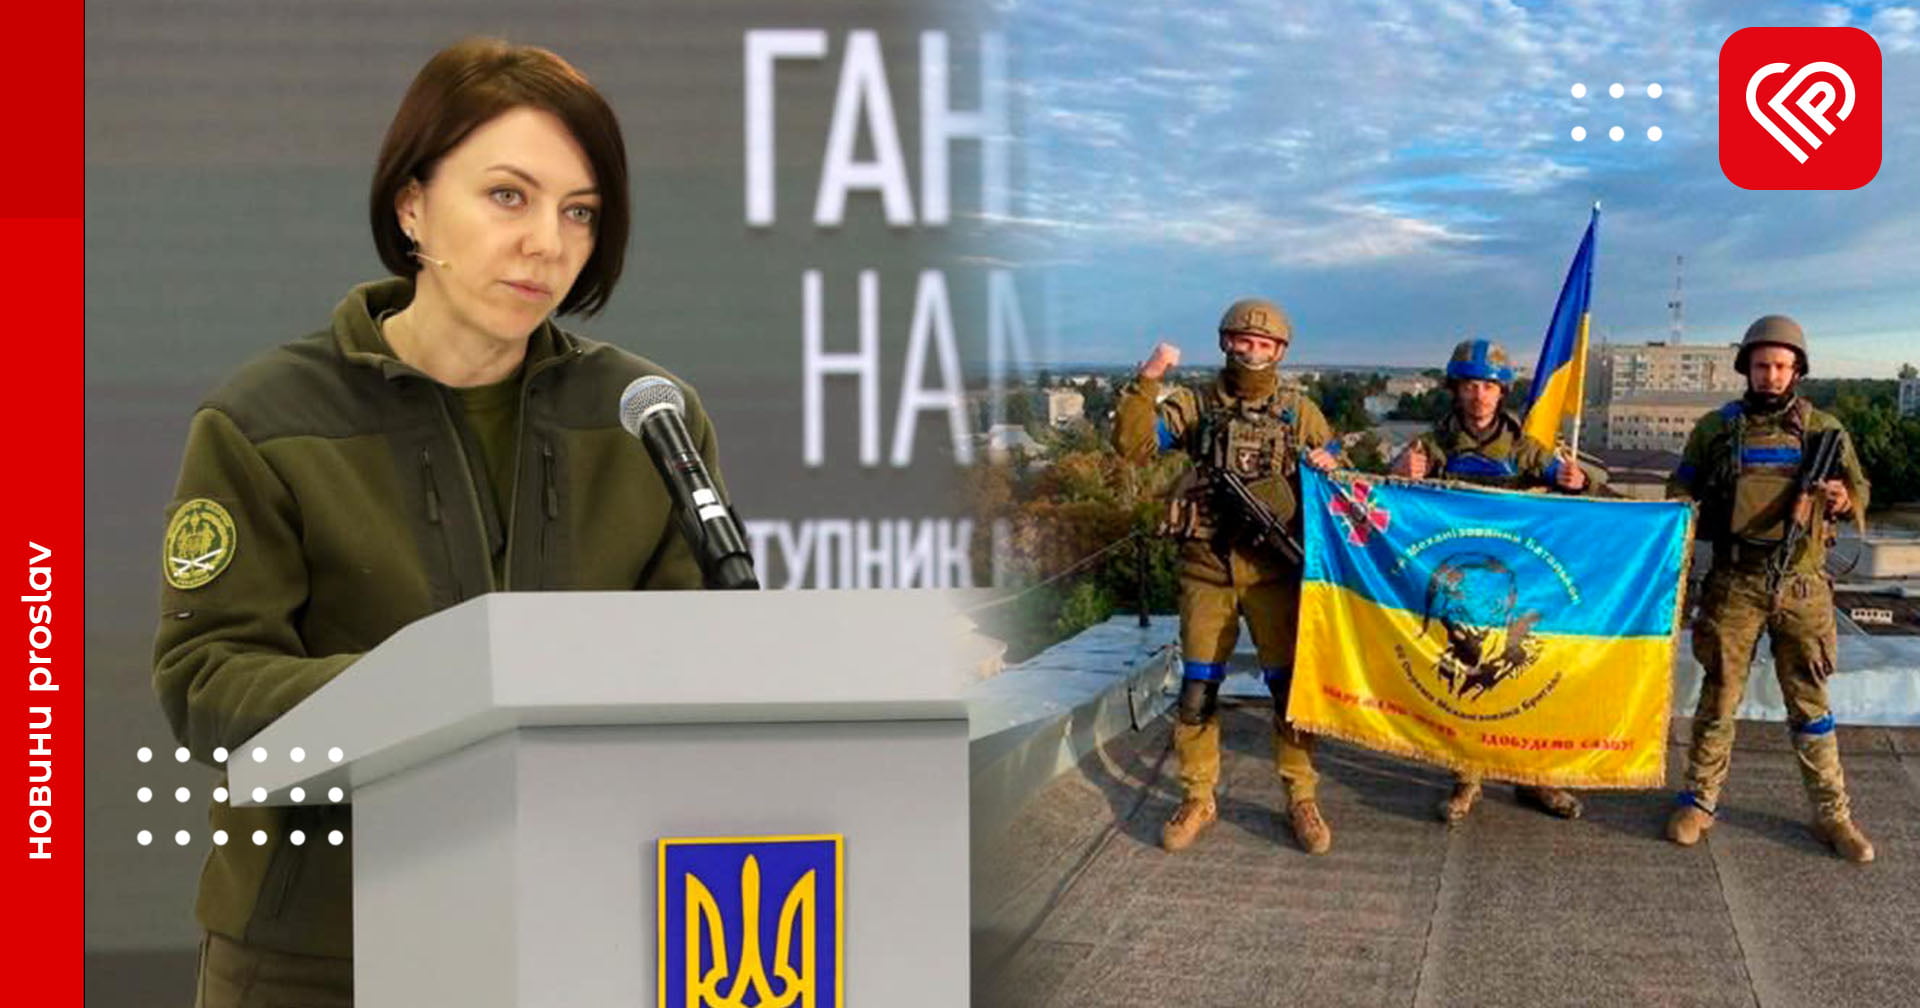 Український прапор над населеним пунктом ще не означає повного звільнення з окупації – пояснення від Міноборони